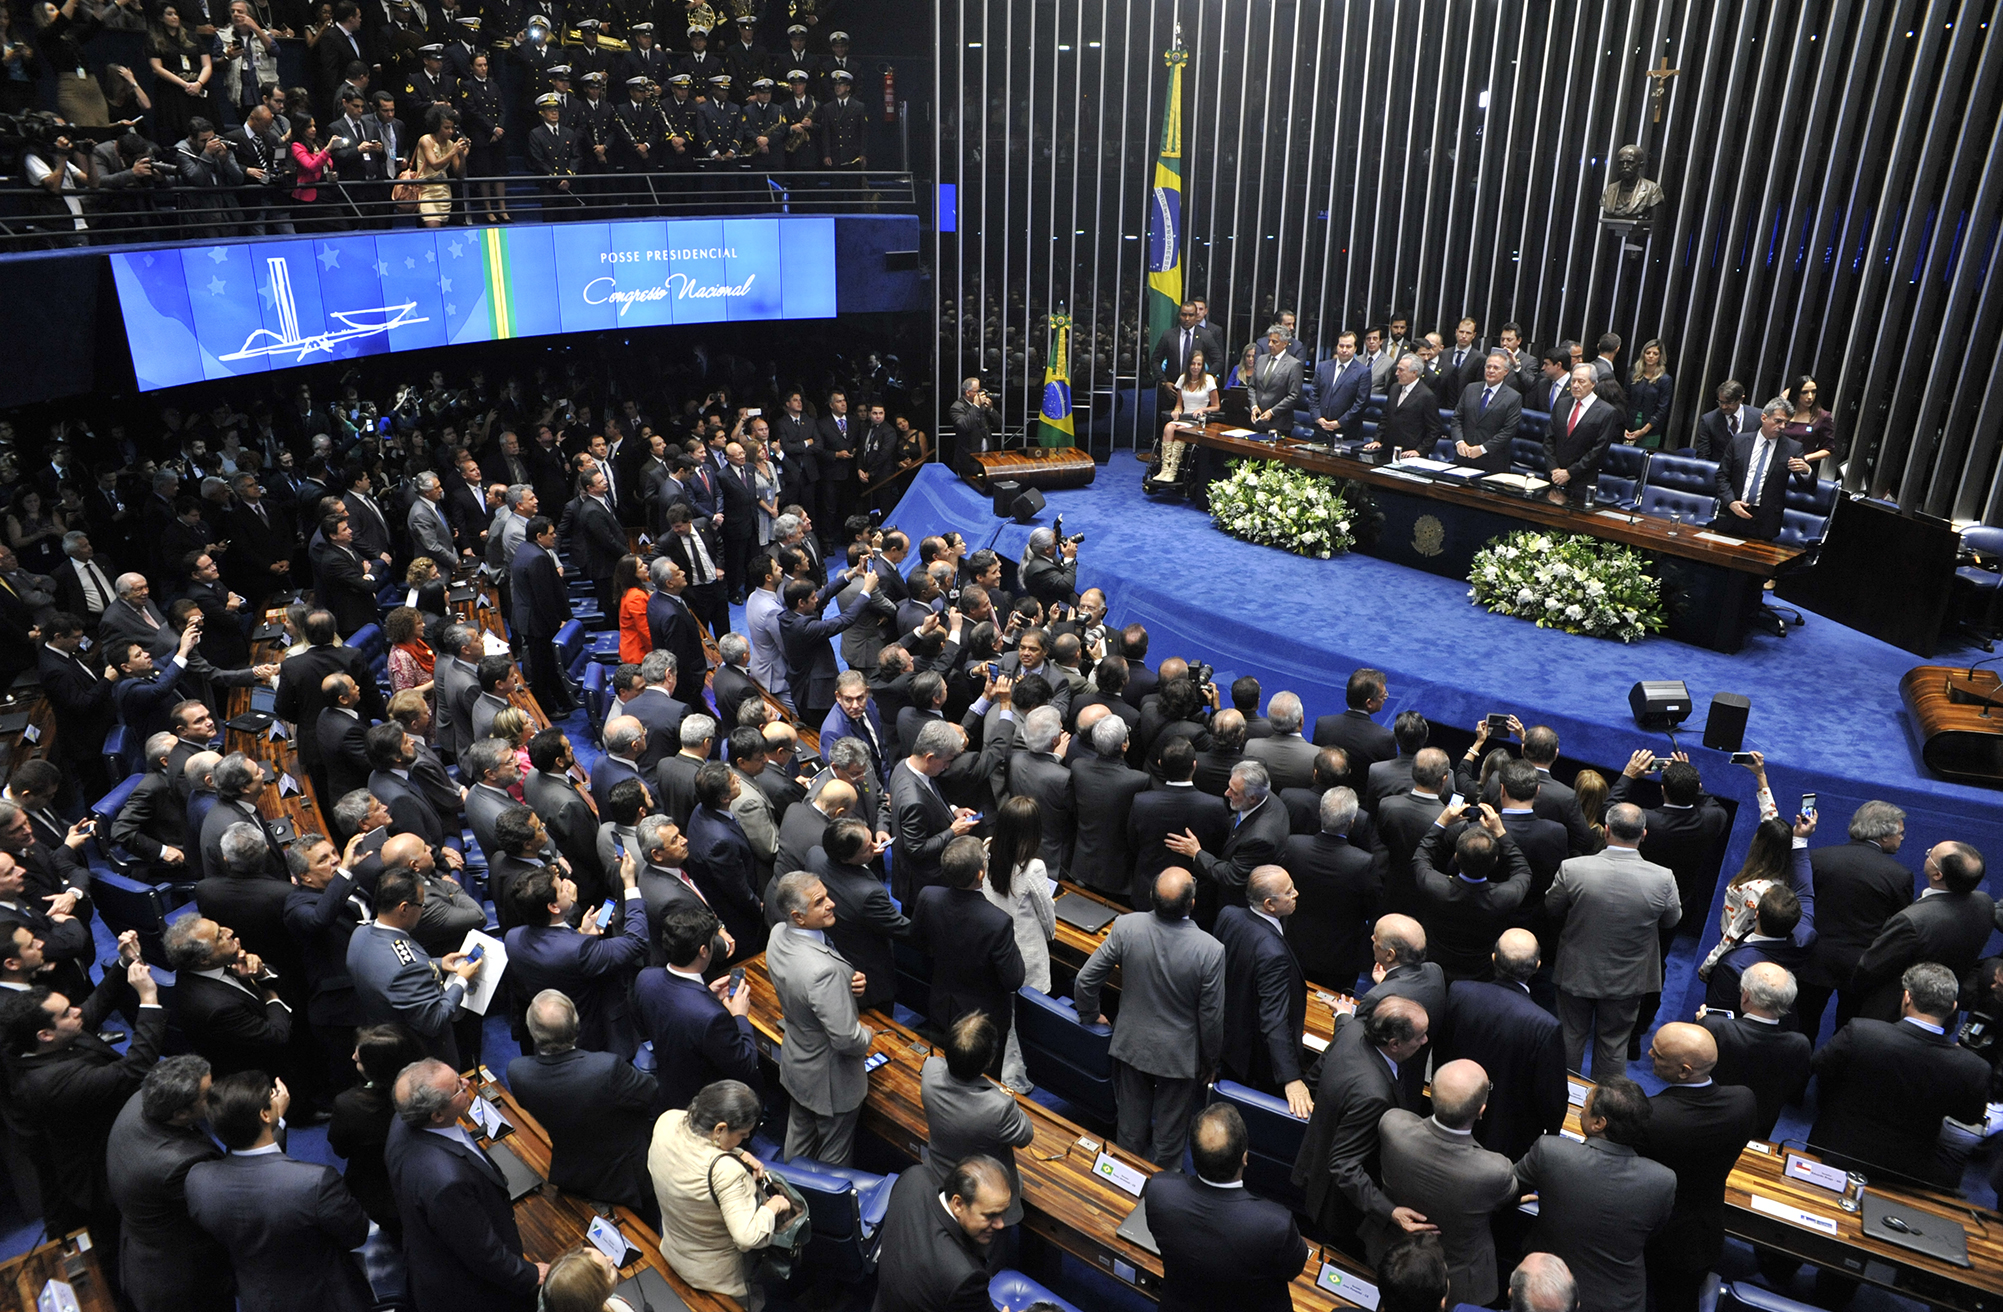 Photo credit: Alex Ferreira / Câmara dos Deputados, https://www.camara.leg.br/internet/bancoimagem/banco/2016/08/img20160831173806348008MED.jpg